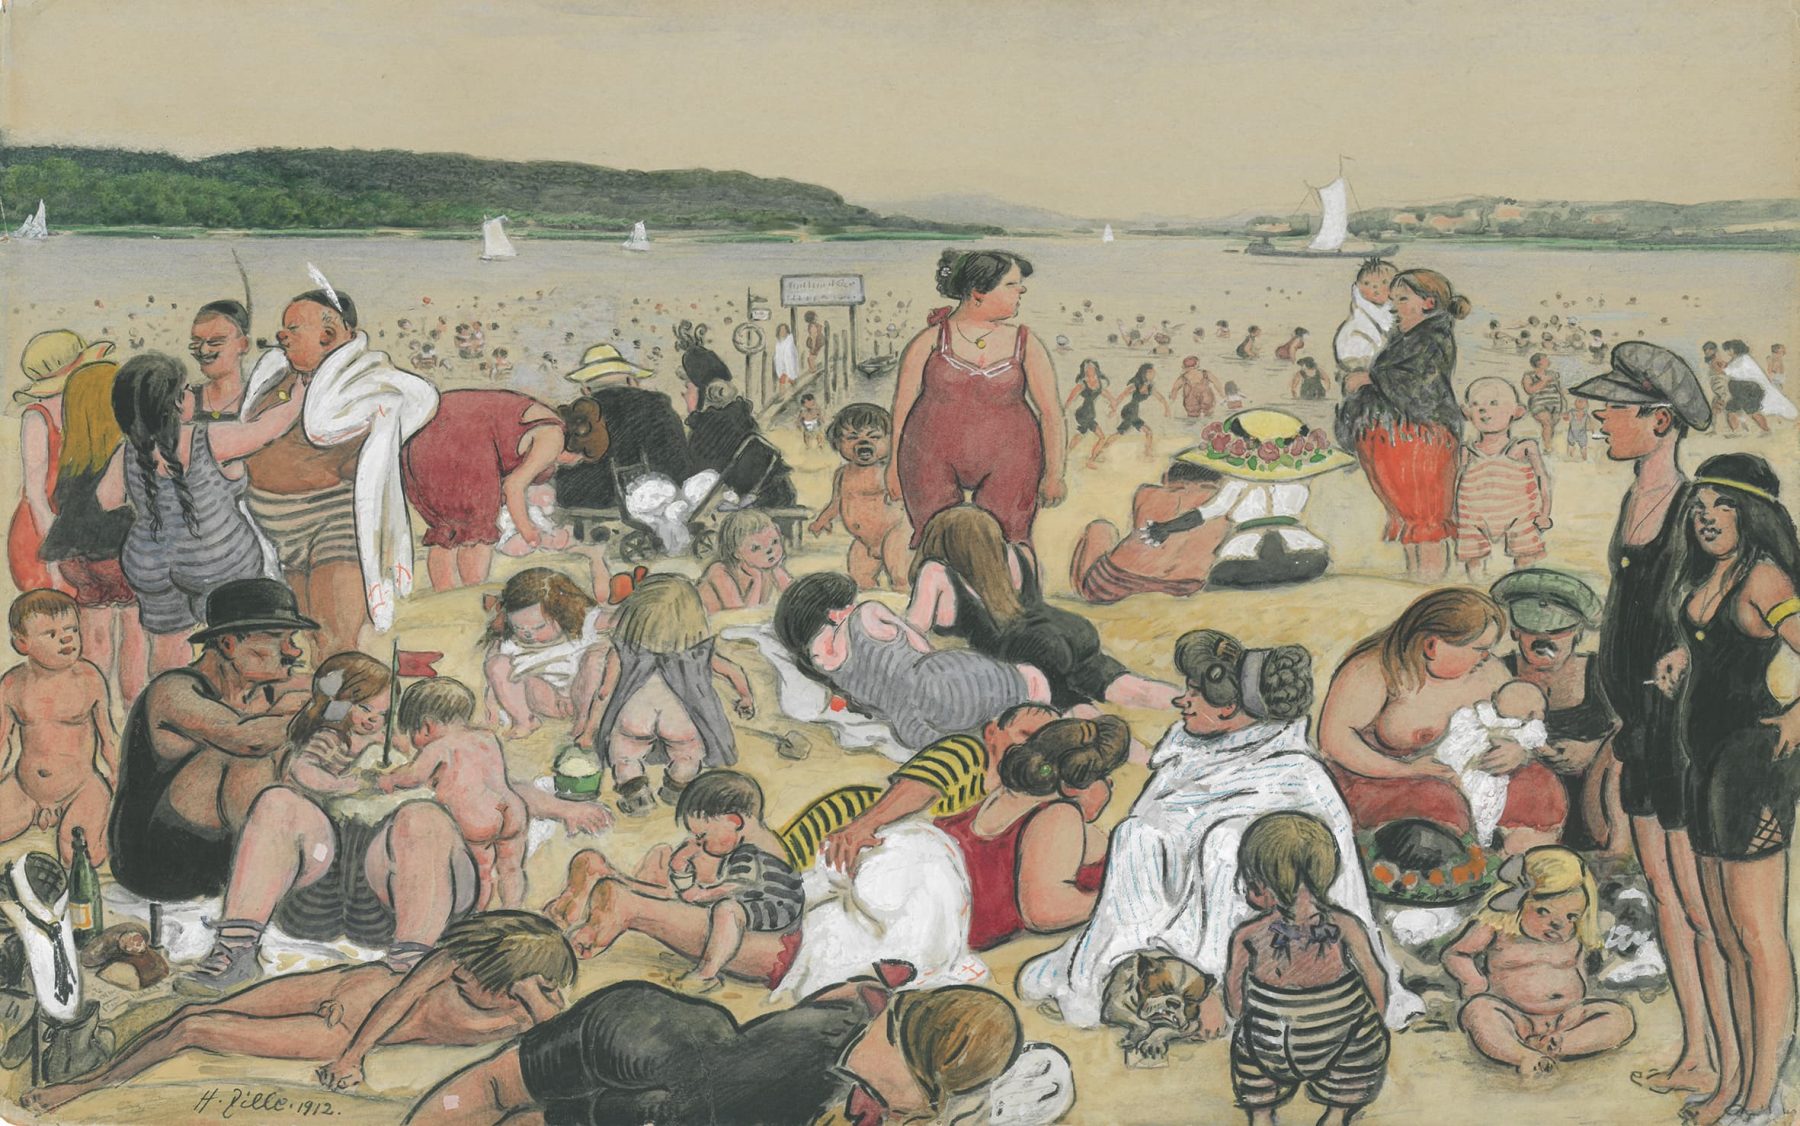 Bunte Strandbadszene mit vielen unterschiedlichen Personen am Ufer und im Wasser in Bade- und Sraßenkleidung oder nackt.